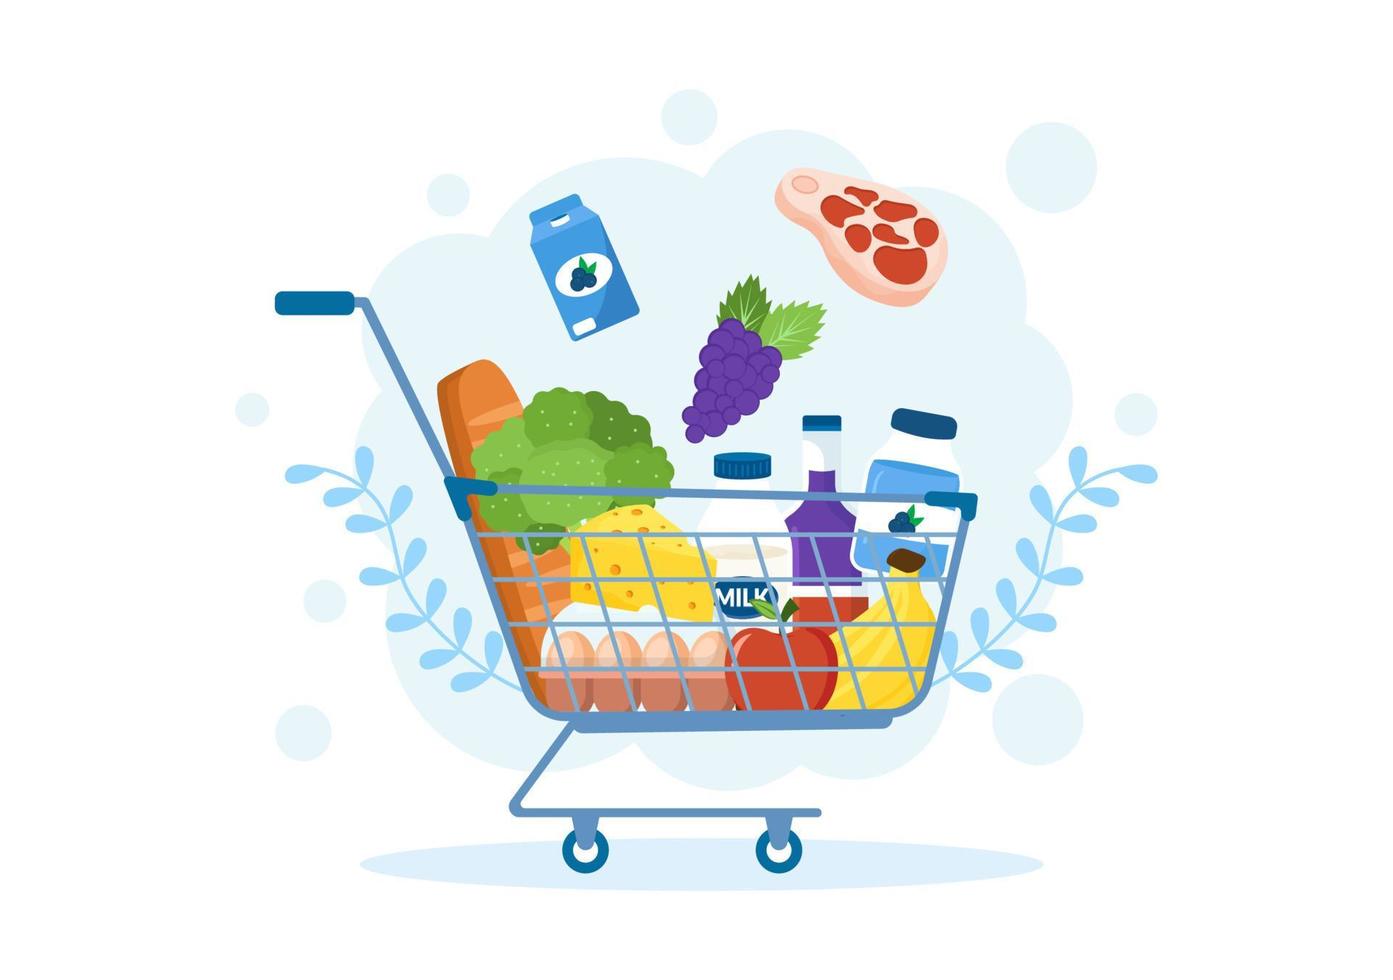 mercearia ou supermercado com prateleiras de produtos alimentares, laticínios, frutas e bebidas para fazer compras em ilustração de modelos desenhados à mão de desenhos animados planos vetor